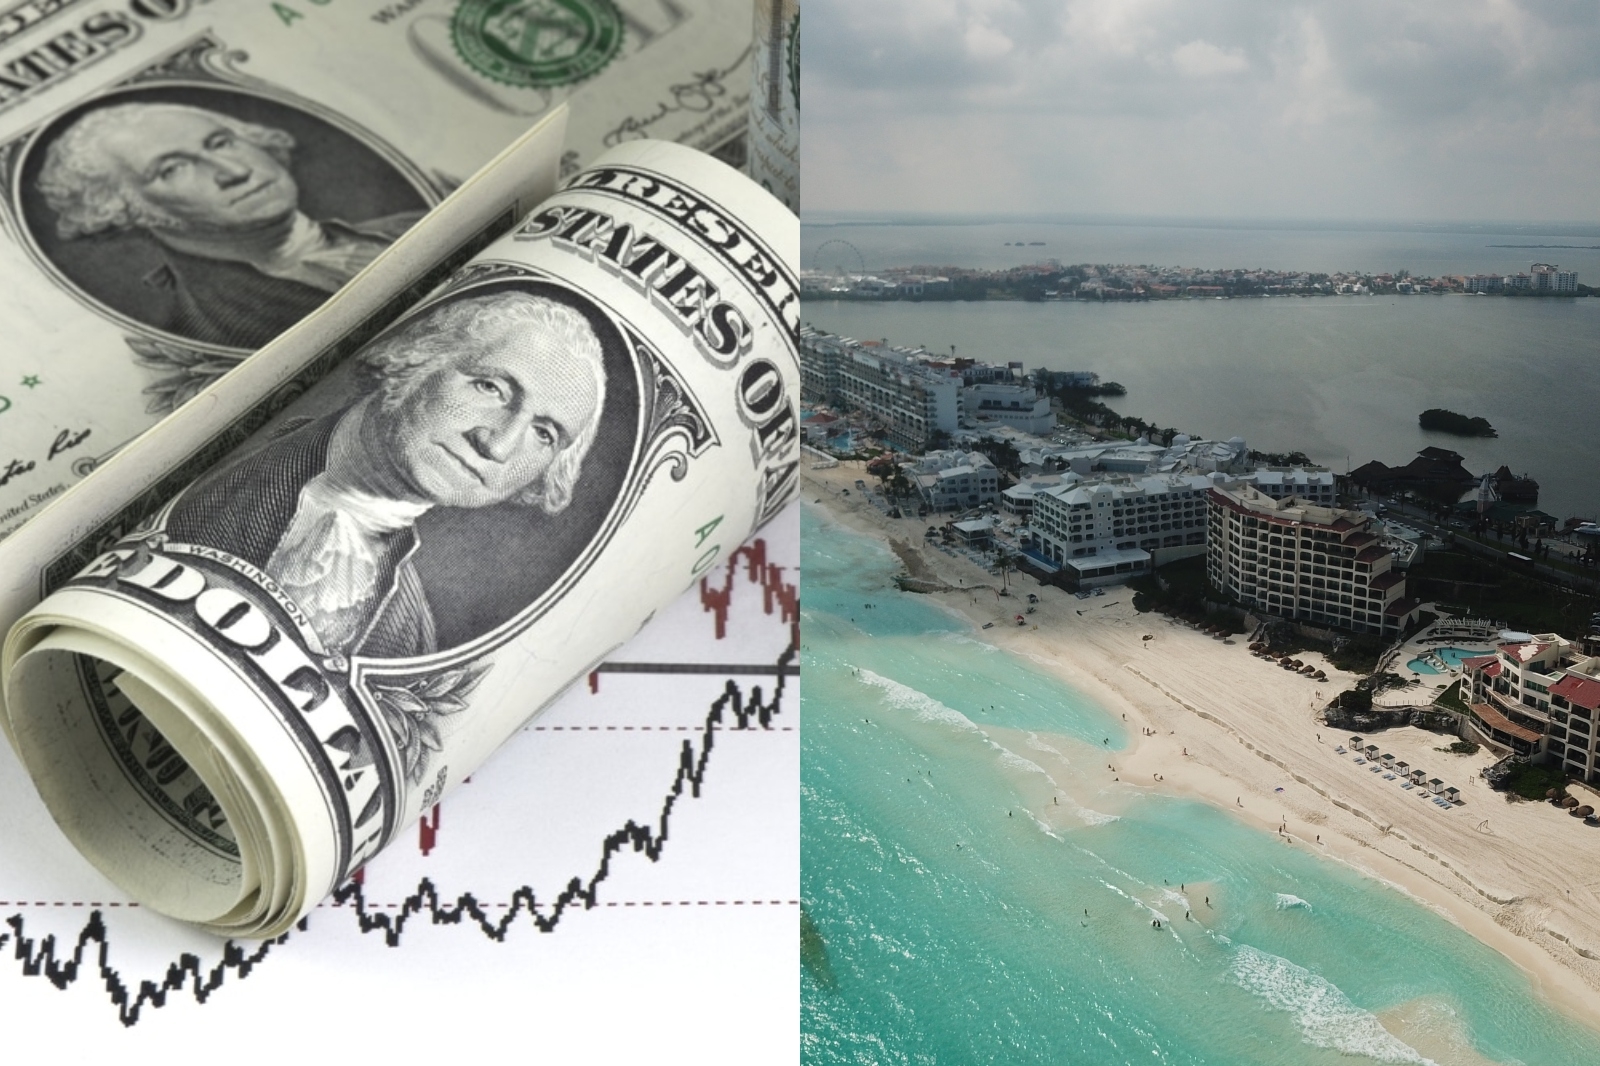 El dólar se cotizó por arriba de los 20 pesos mexicanos, según datos de la casa de cambio ubicada en el Aeropuerto Internacional de Cancún